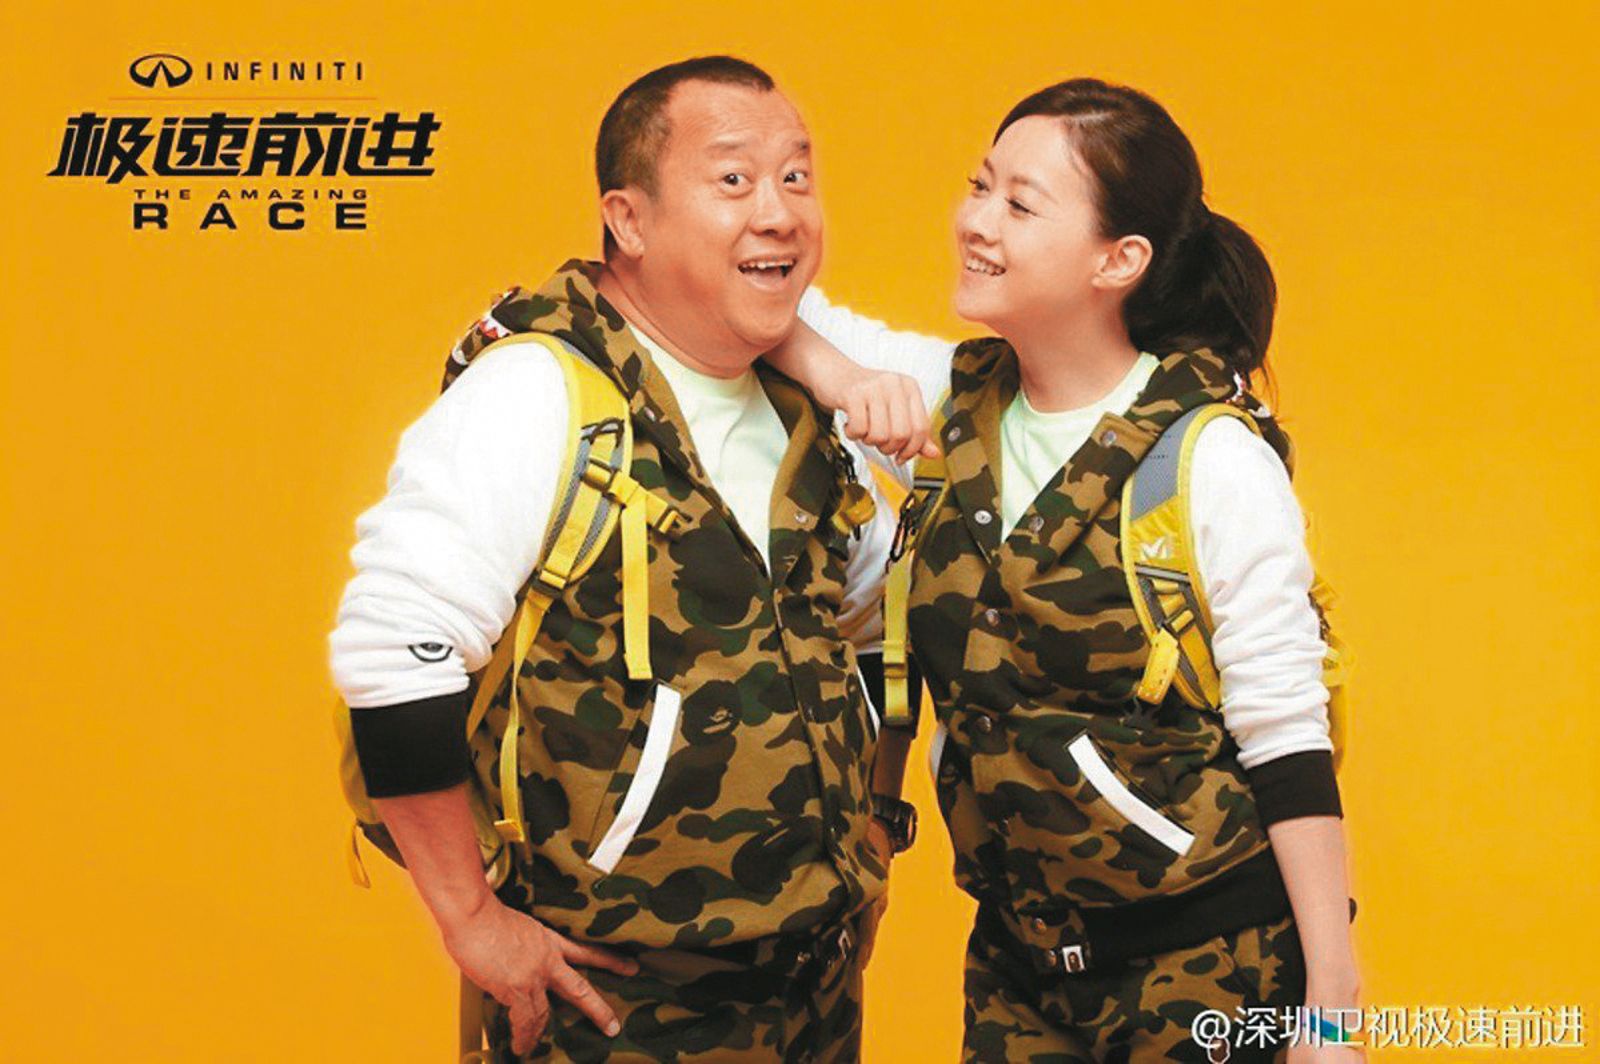 曾寶儀跟曾志偉2015年曾上中國大陸節目《極速前進2》，以父女檔身分接受挑戰。（翻攝自深圳衛視《極速前進》微博）